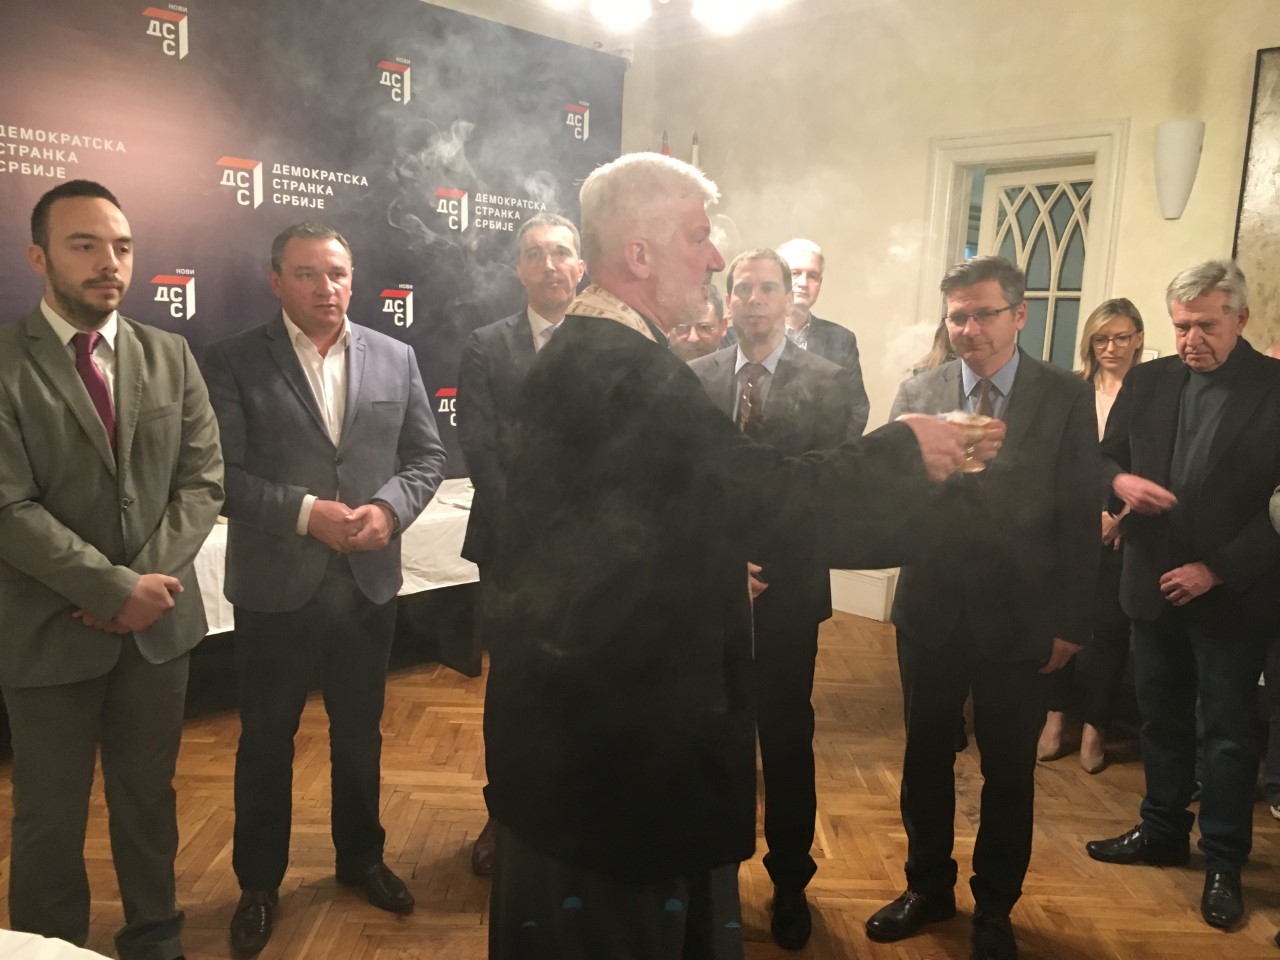 Демократска странка Србије обележила крсну славу- Светог великомученика Георгија